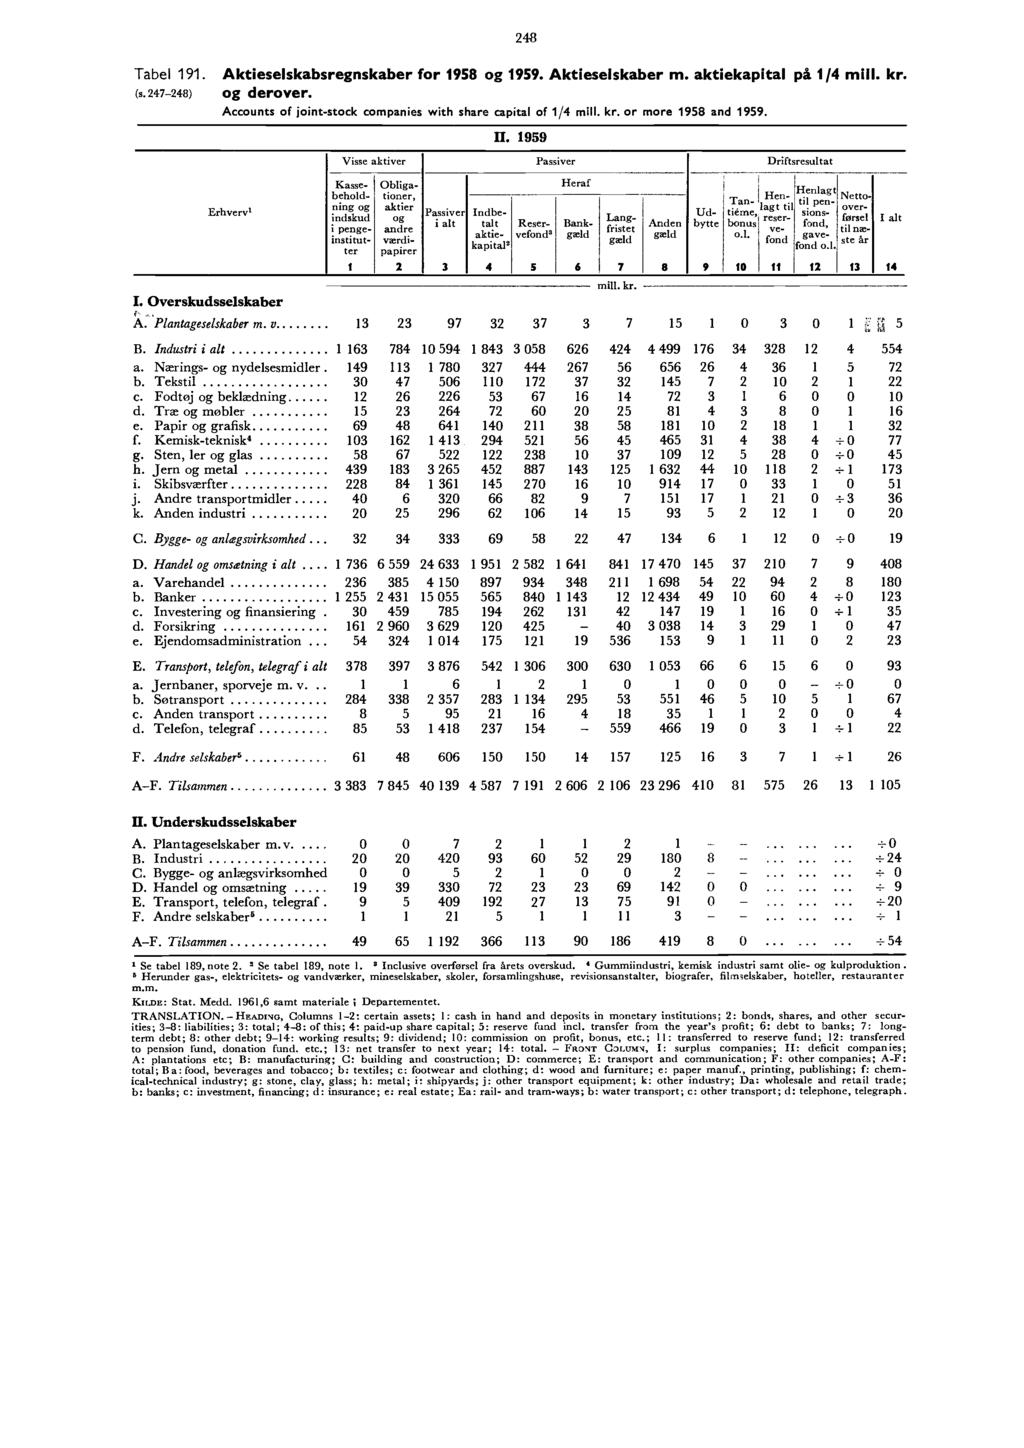 248 Tabel 9. (s.247-248) Aktieselskabsregnskaber for 958 og 959. Aktieselskaber m. aktiekapital på /4 og derover. Accounts of joint-stock companies with share capital of /4 or more 958 and 959.